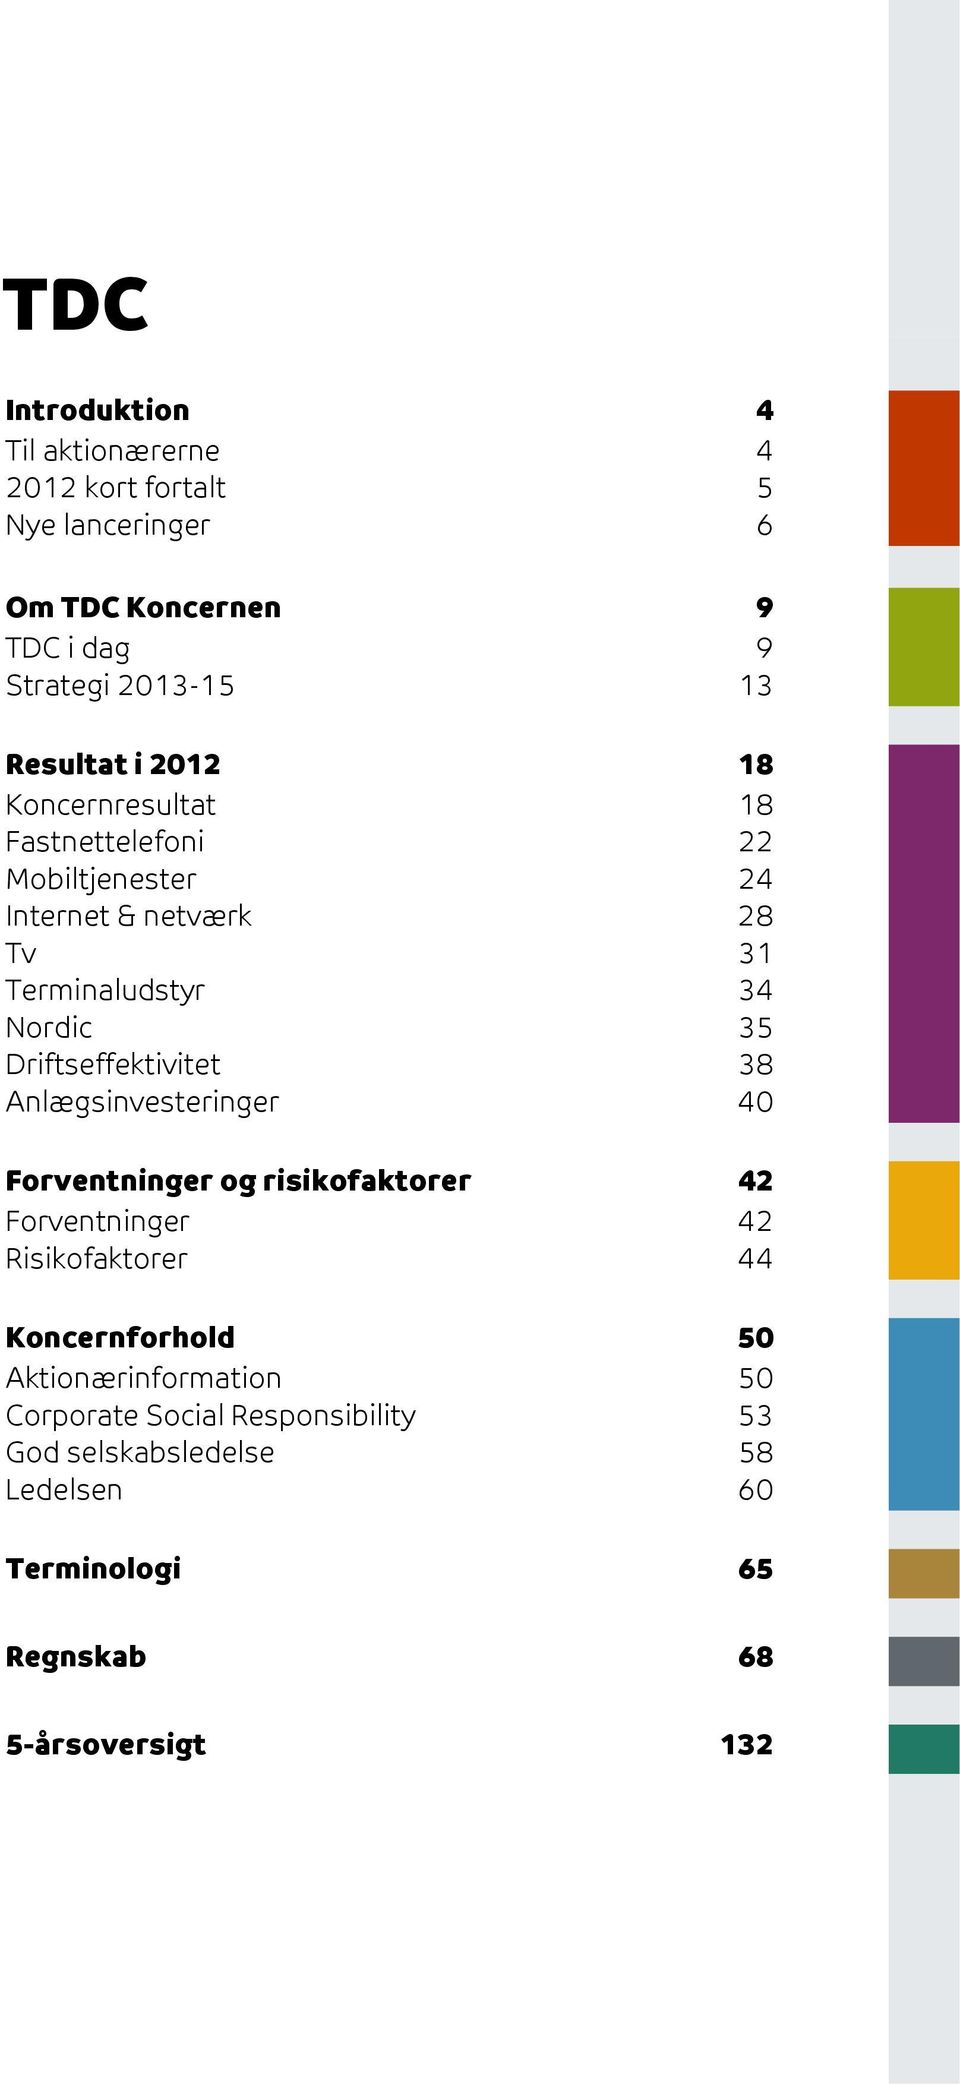 Nordic 35 Driftseffektivitet 38 Anlægsinvesteringer 40 Forventninger og risikofaktorer 42 Forventninger 42 Risikofaktorer 44